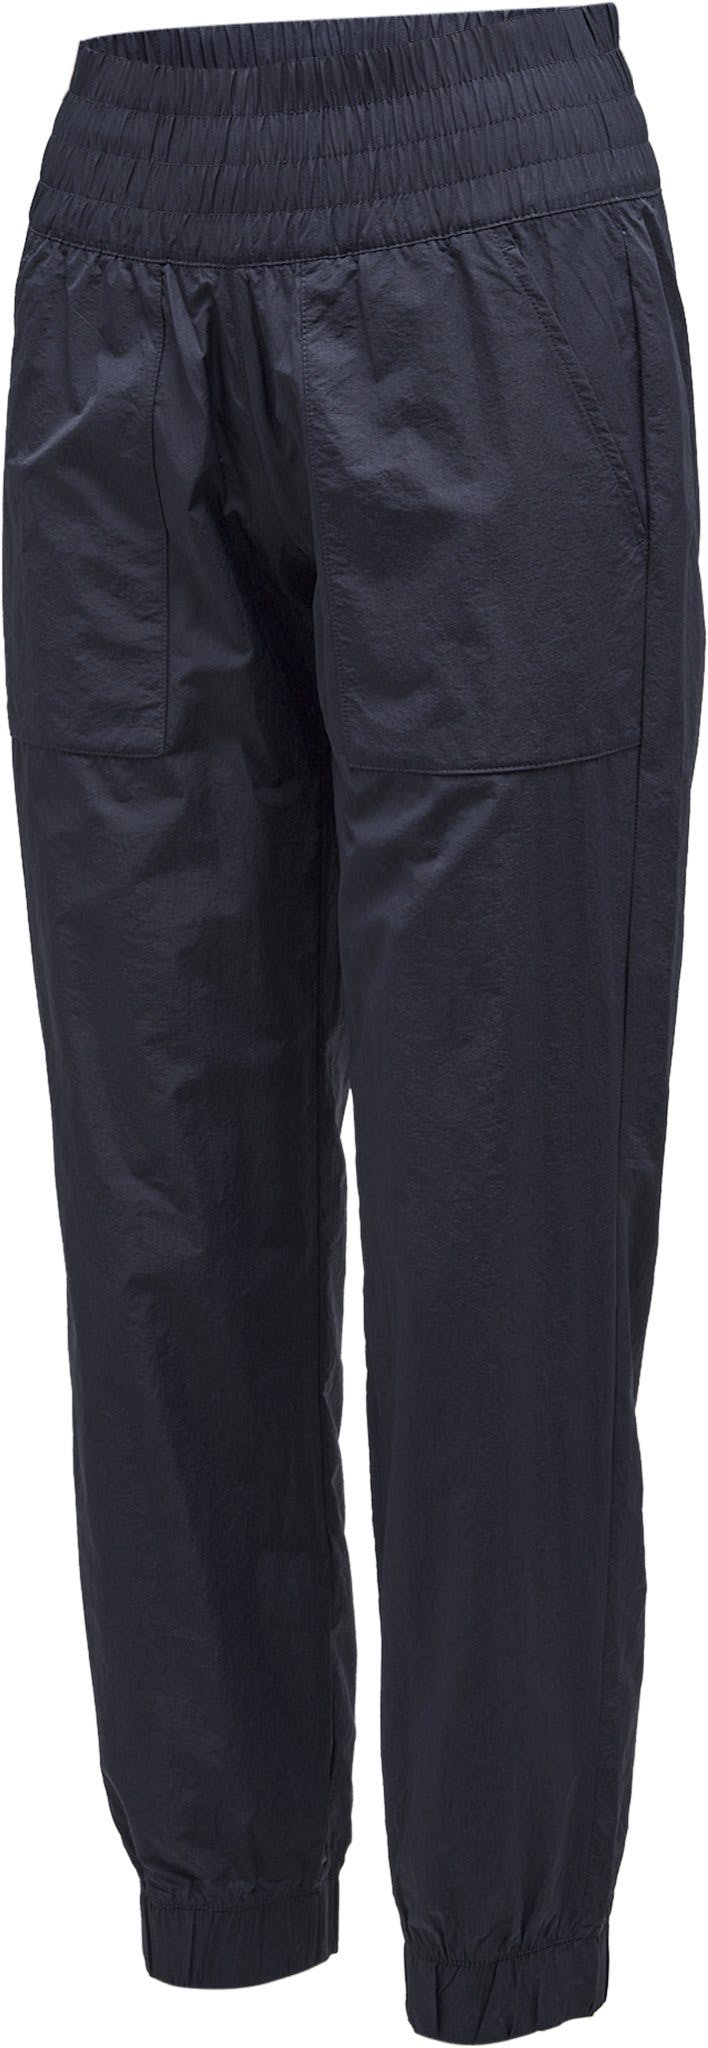 Numéro de l'image de la galerie de produits 3 pour le produit Pantalon de jogging Boundless Trek - Femme